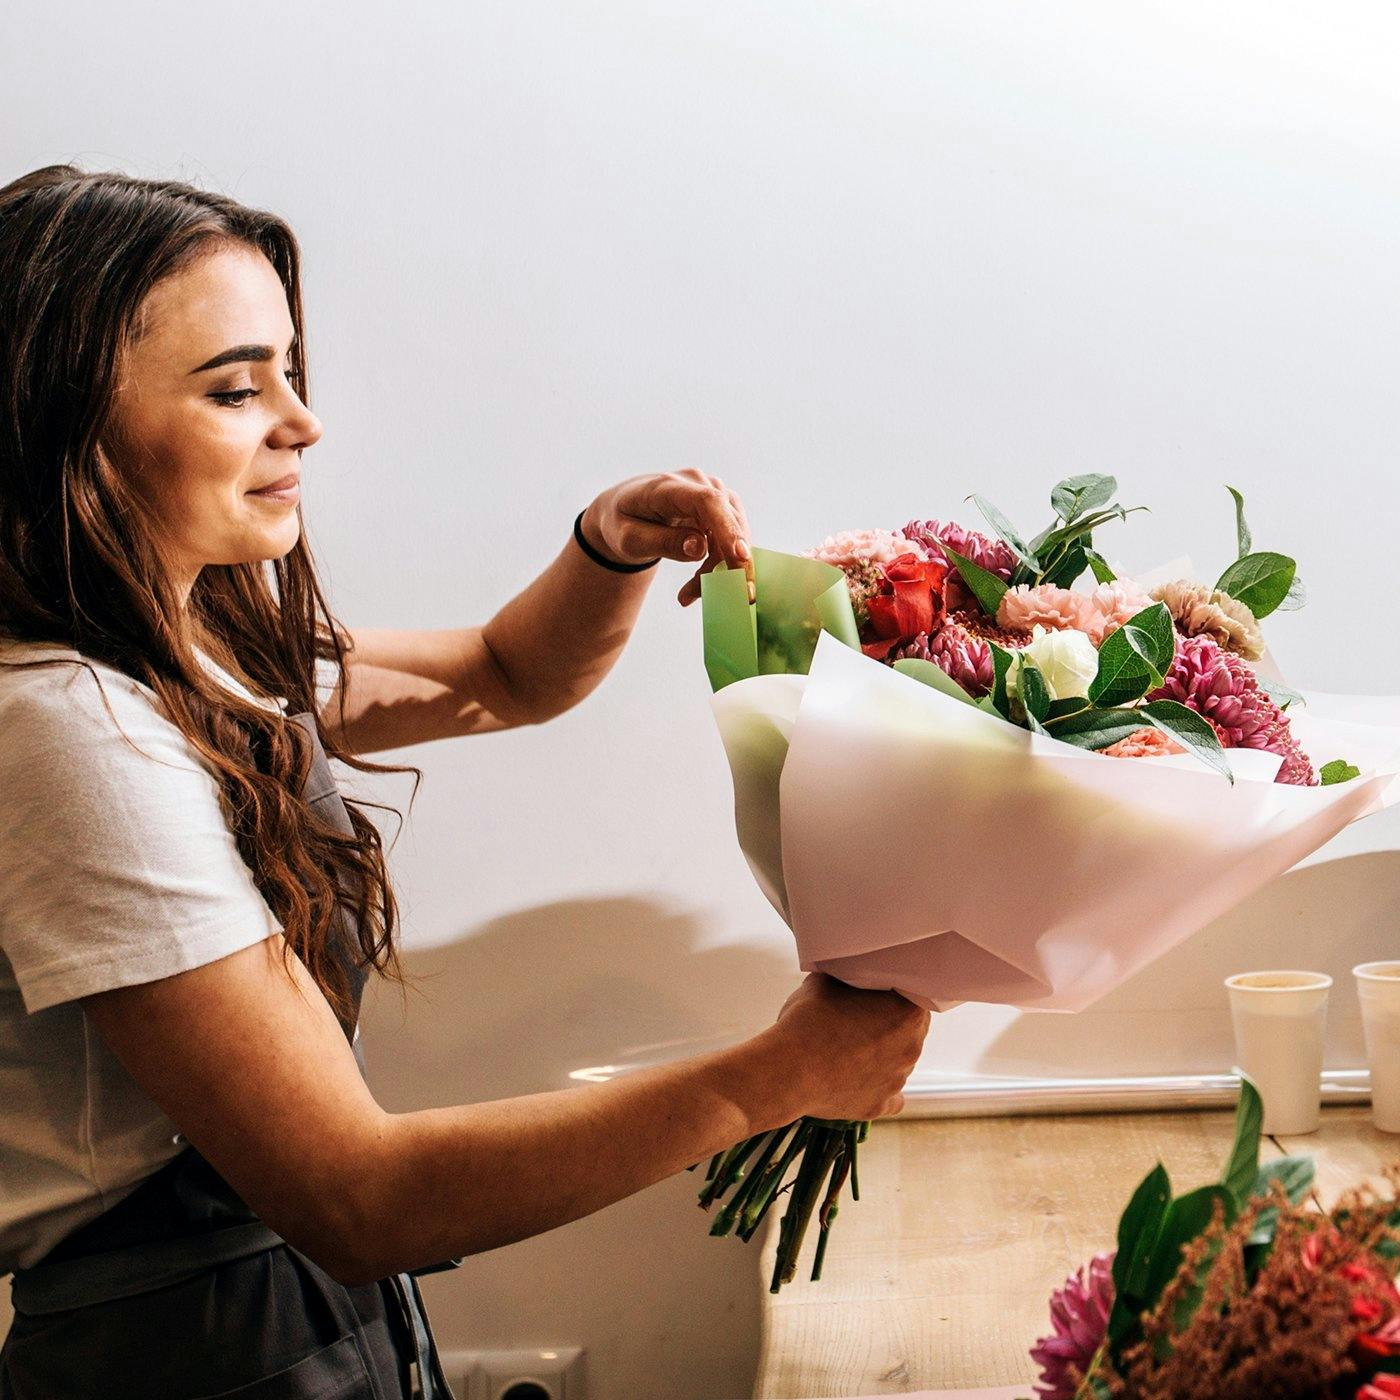 A woman assembling a boquet of flowers